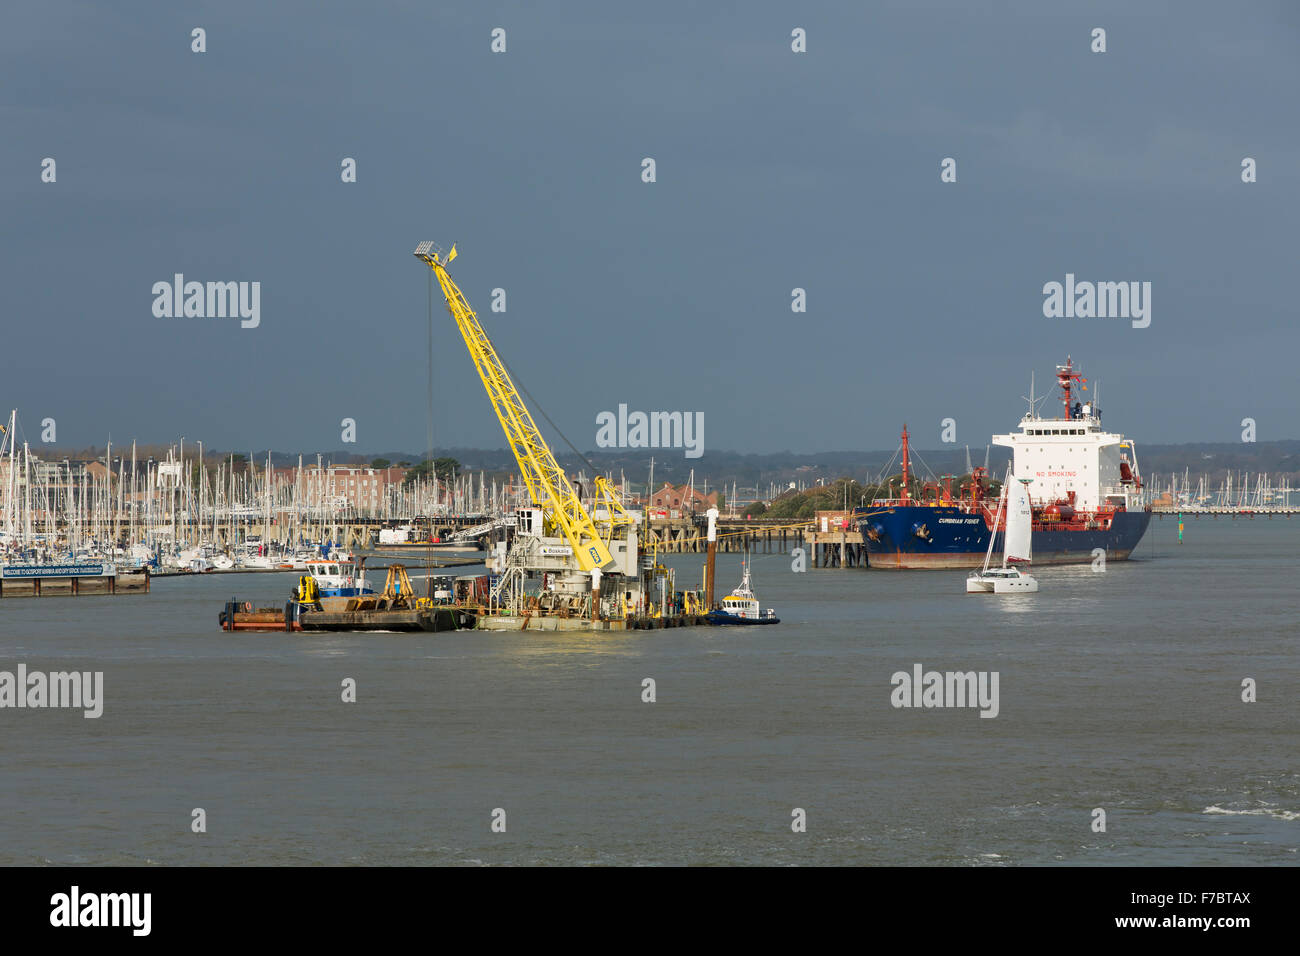 Grue sur un ponton flottant dans le port de Portsmouth. L'exécution de travaux de dragage dans le cadre de la préparation du nouveau porte-avions RN Banque D'Images